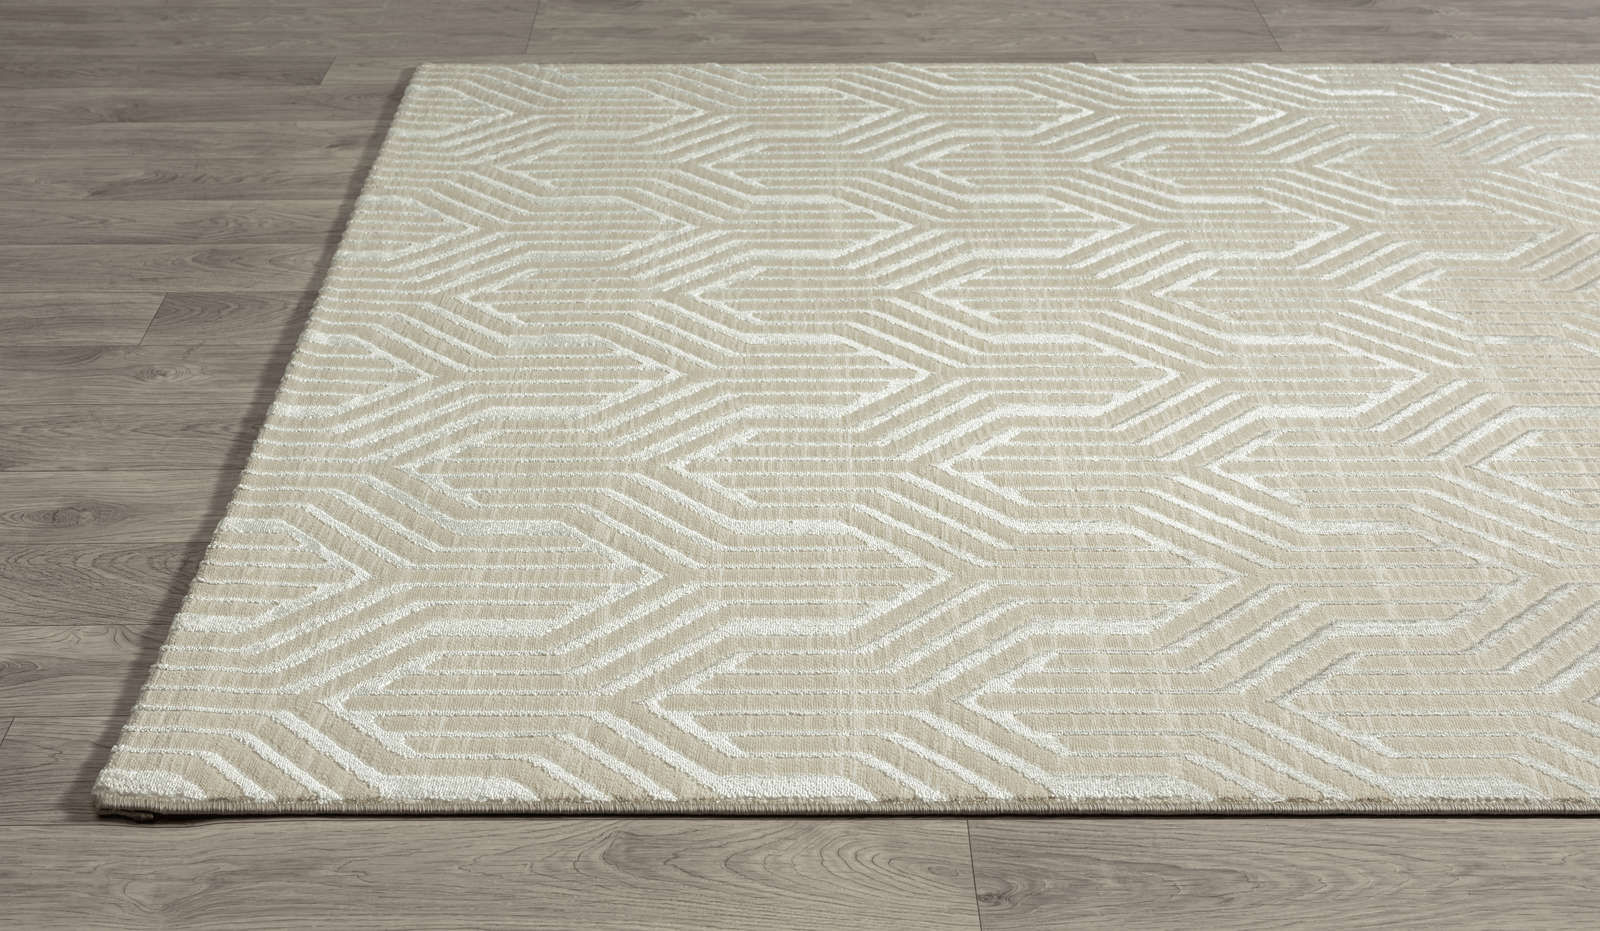             Sanfter Hochflor Teppich in Creme – 230 x 160 cm
        